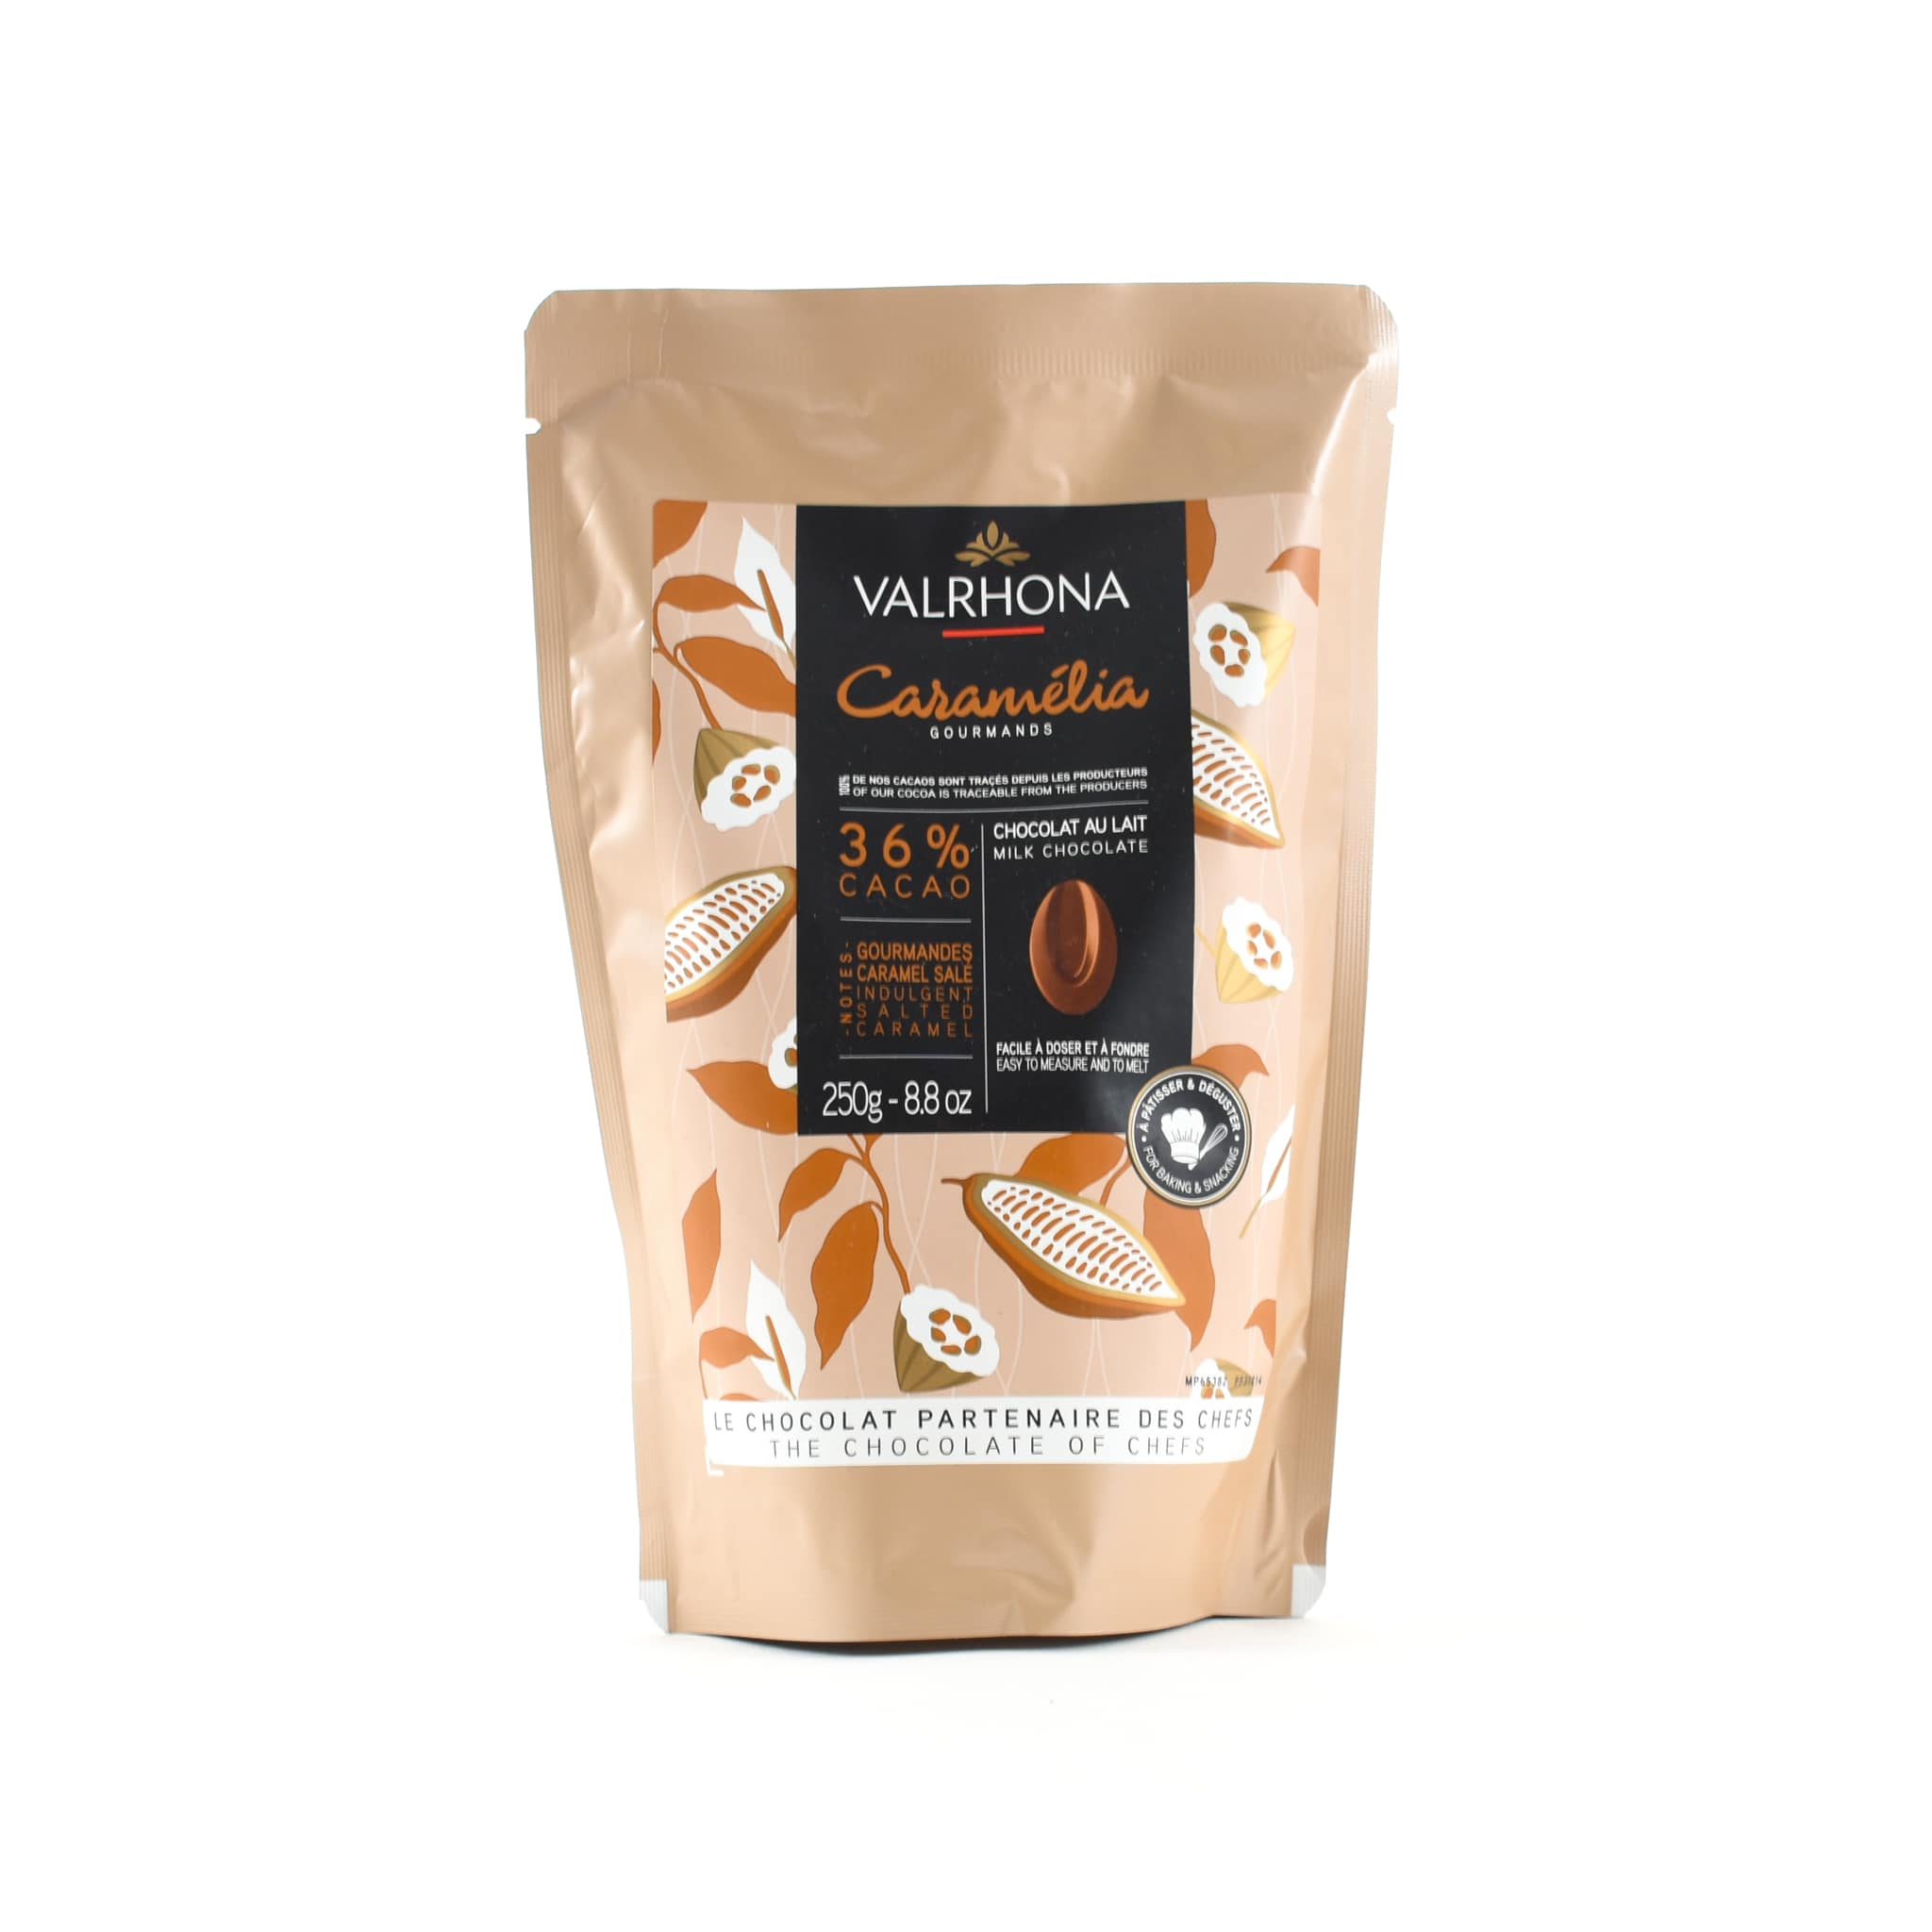 Valrhona Millot, 74% dark chocolate chips by Valrhona